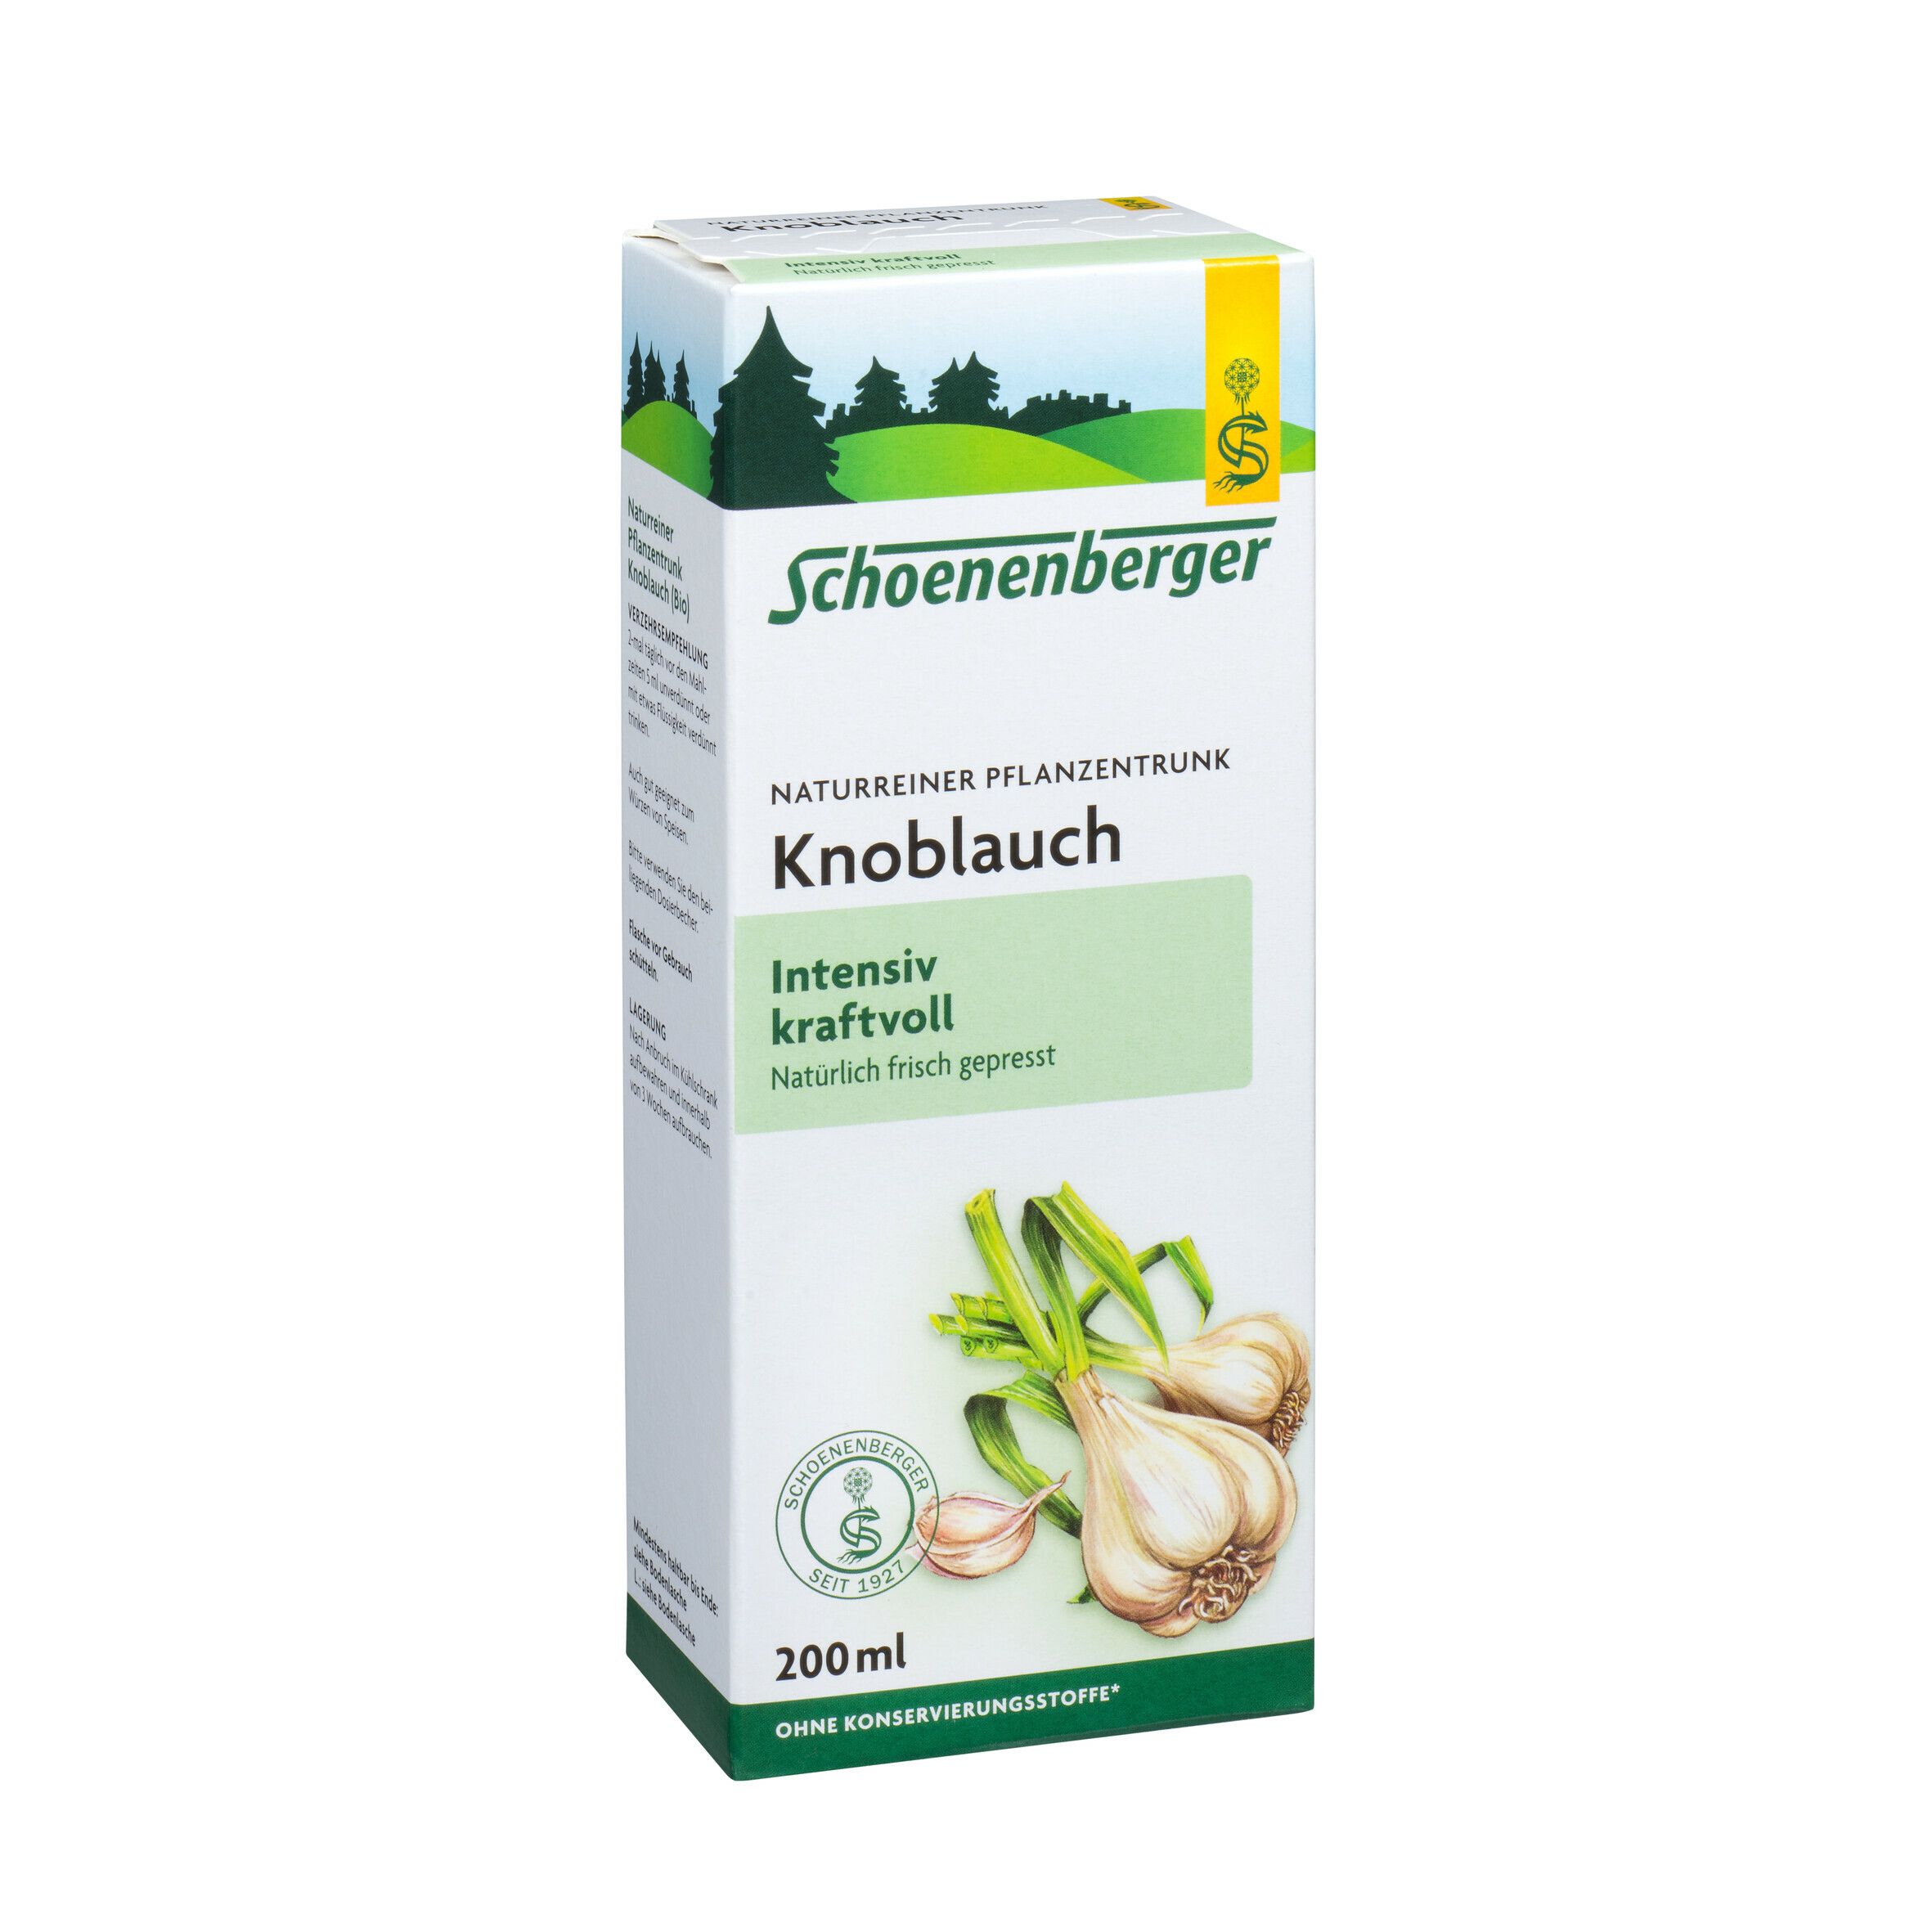 Schoenenberger® naturreiner Pflanzentrunk Knoblauch